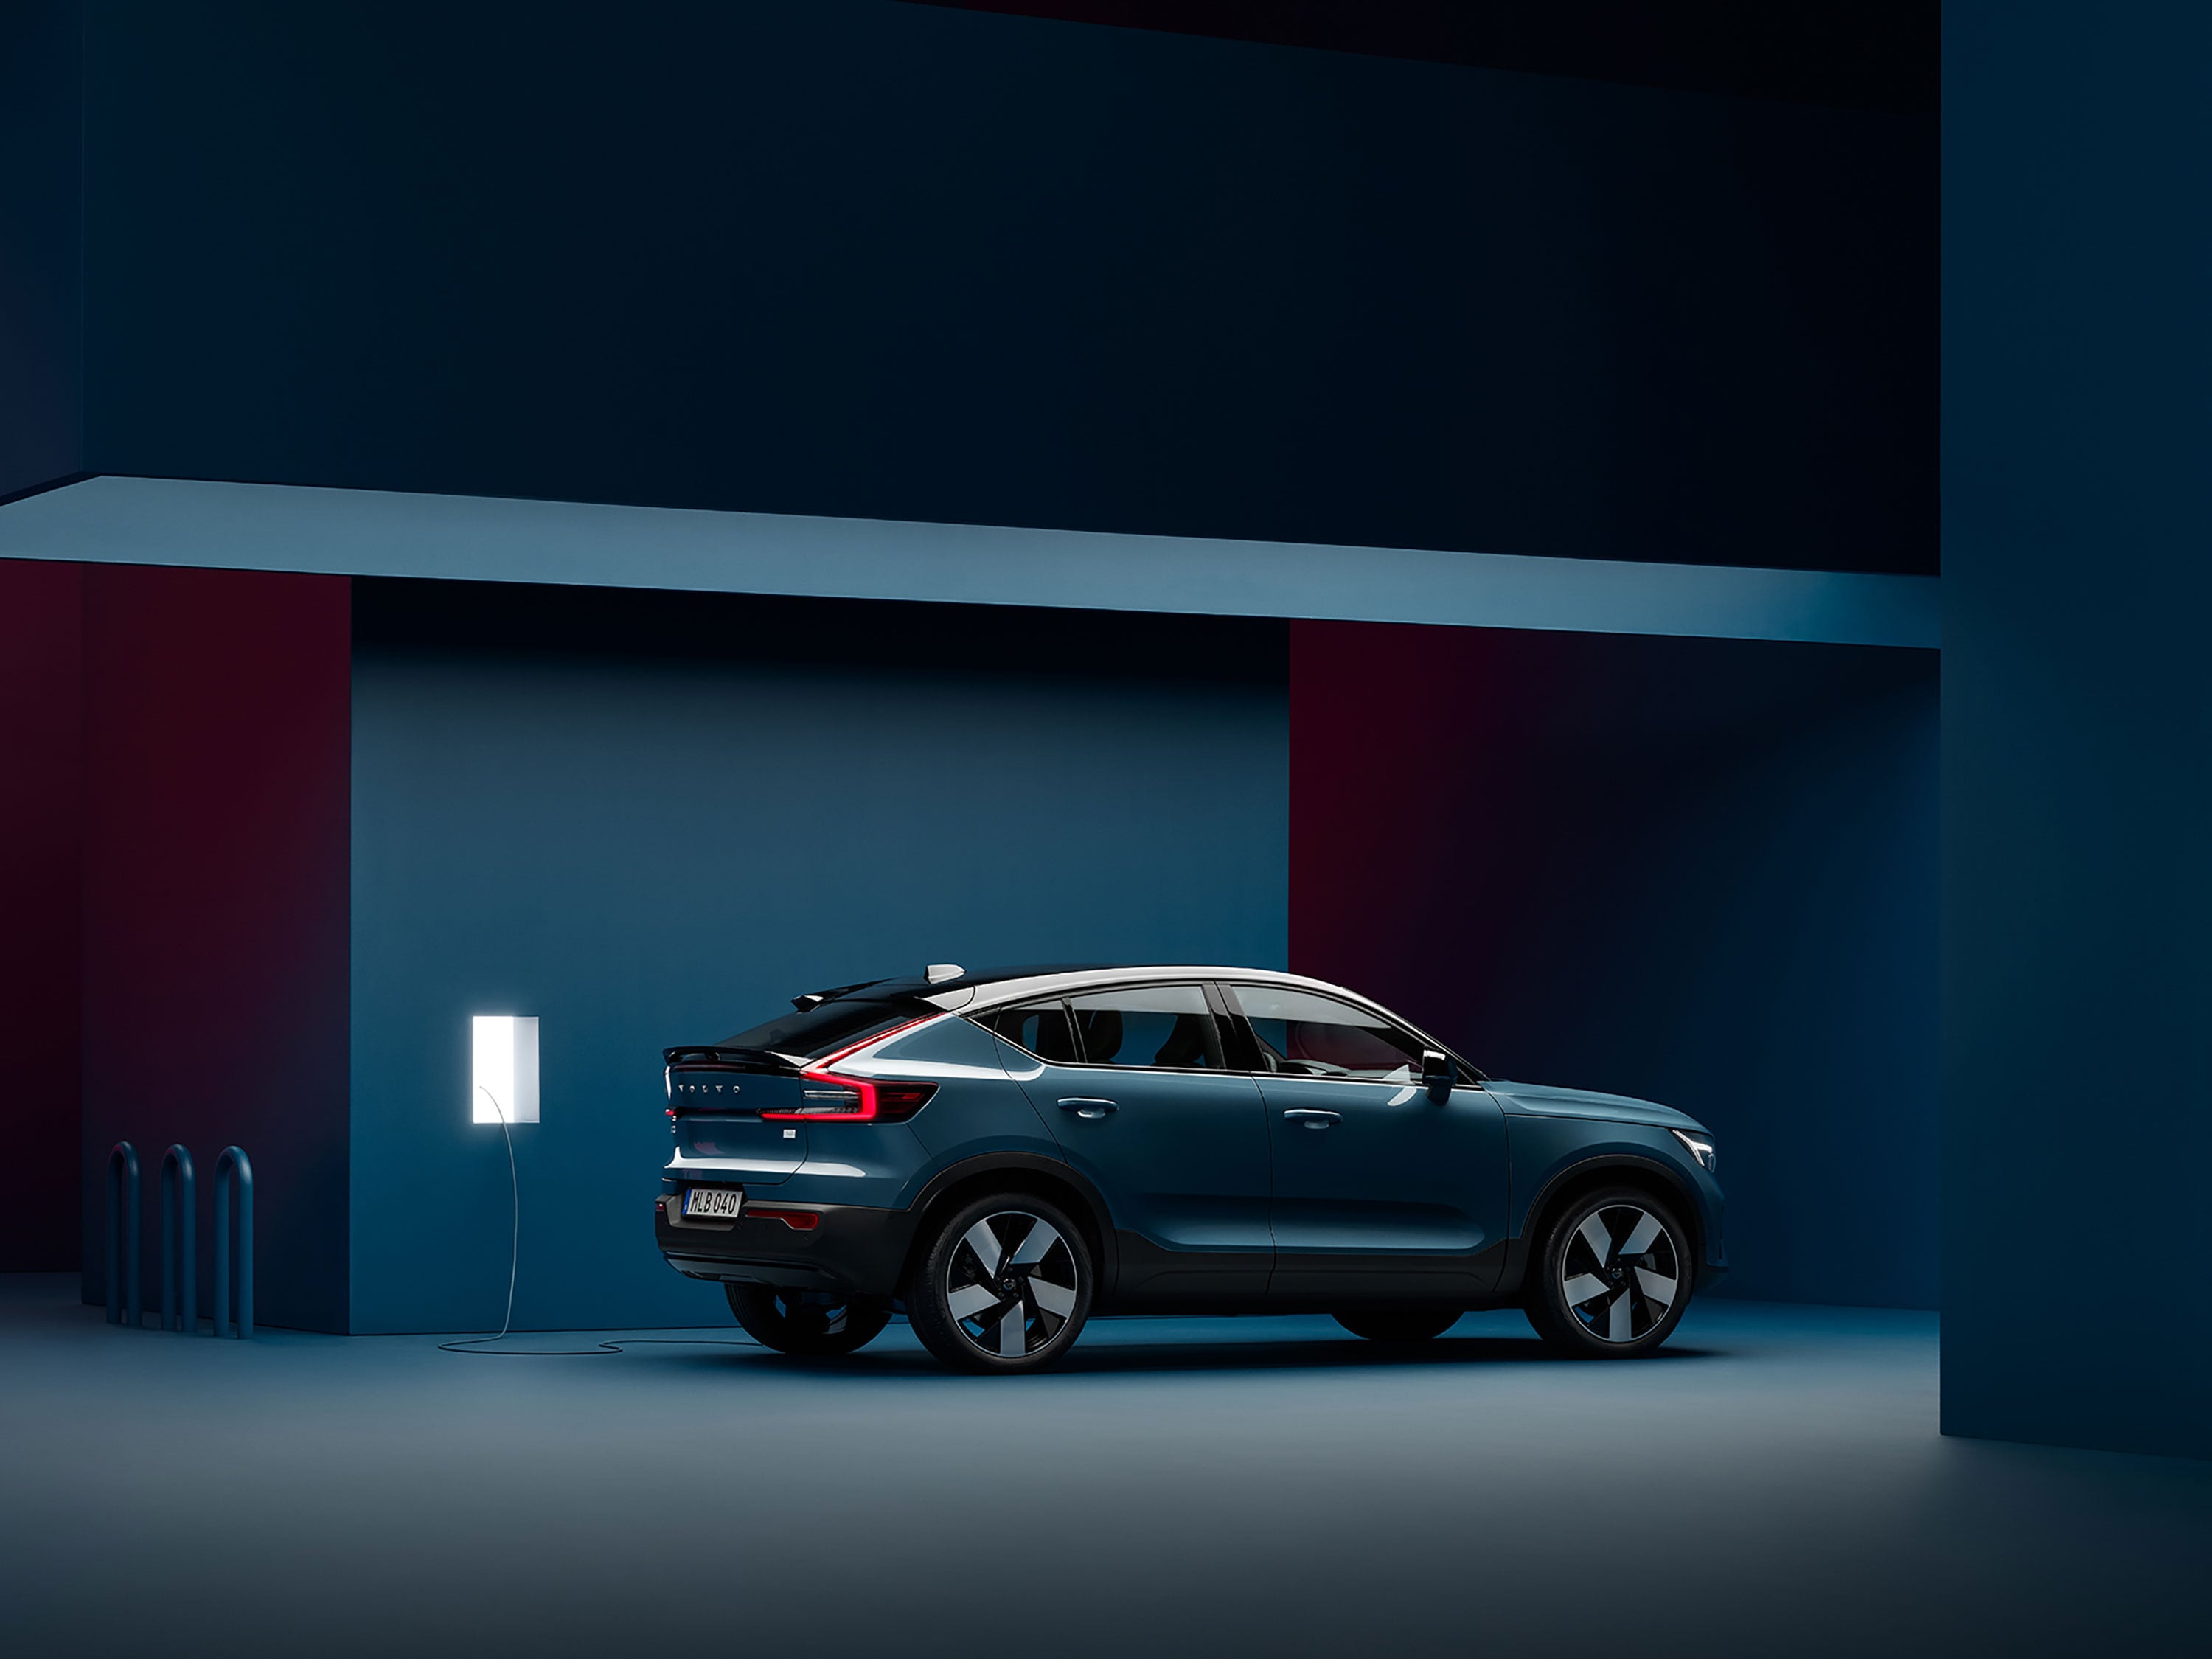 Volvo C40 Recharge припаркован в темно-синей комнате рядом с зарядной станцией.